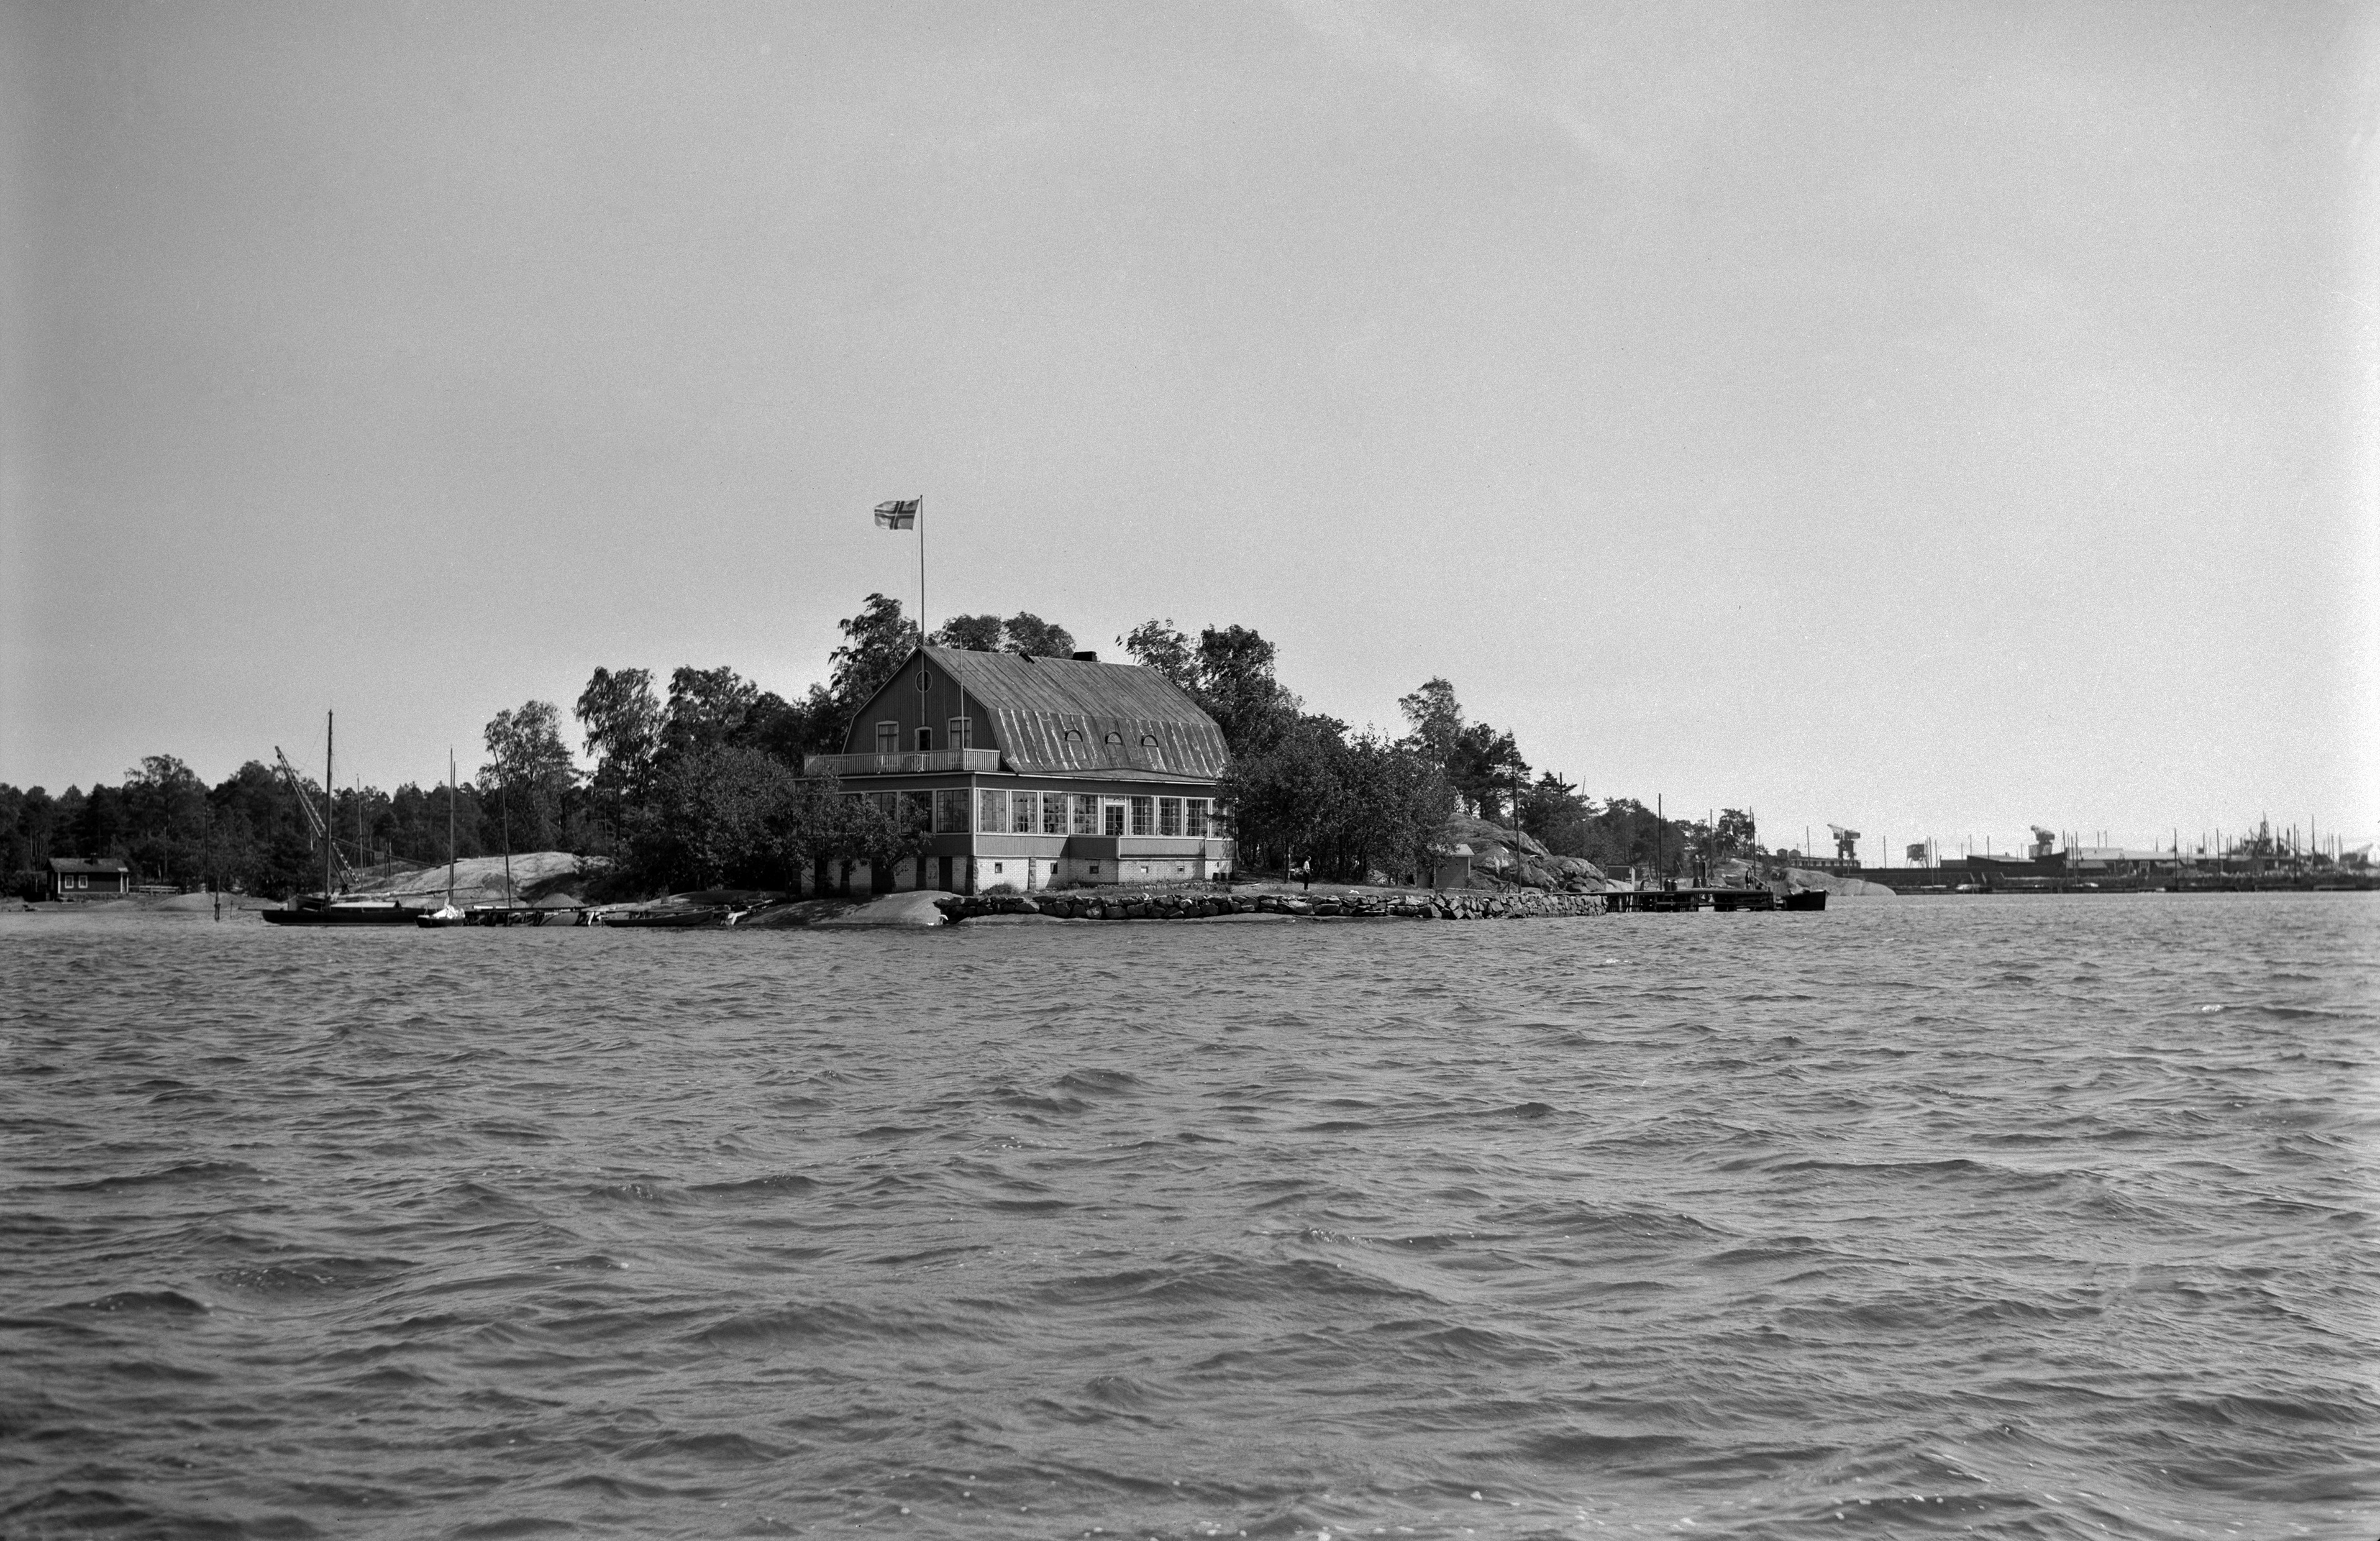 Iso Pässi. Purjehdusseura Helsingfors Segelklubbin (HSK) paviljonki. Rakennettu 1924. Seura toimi saaressa vuosina 1924-1959.